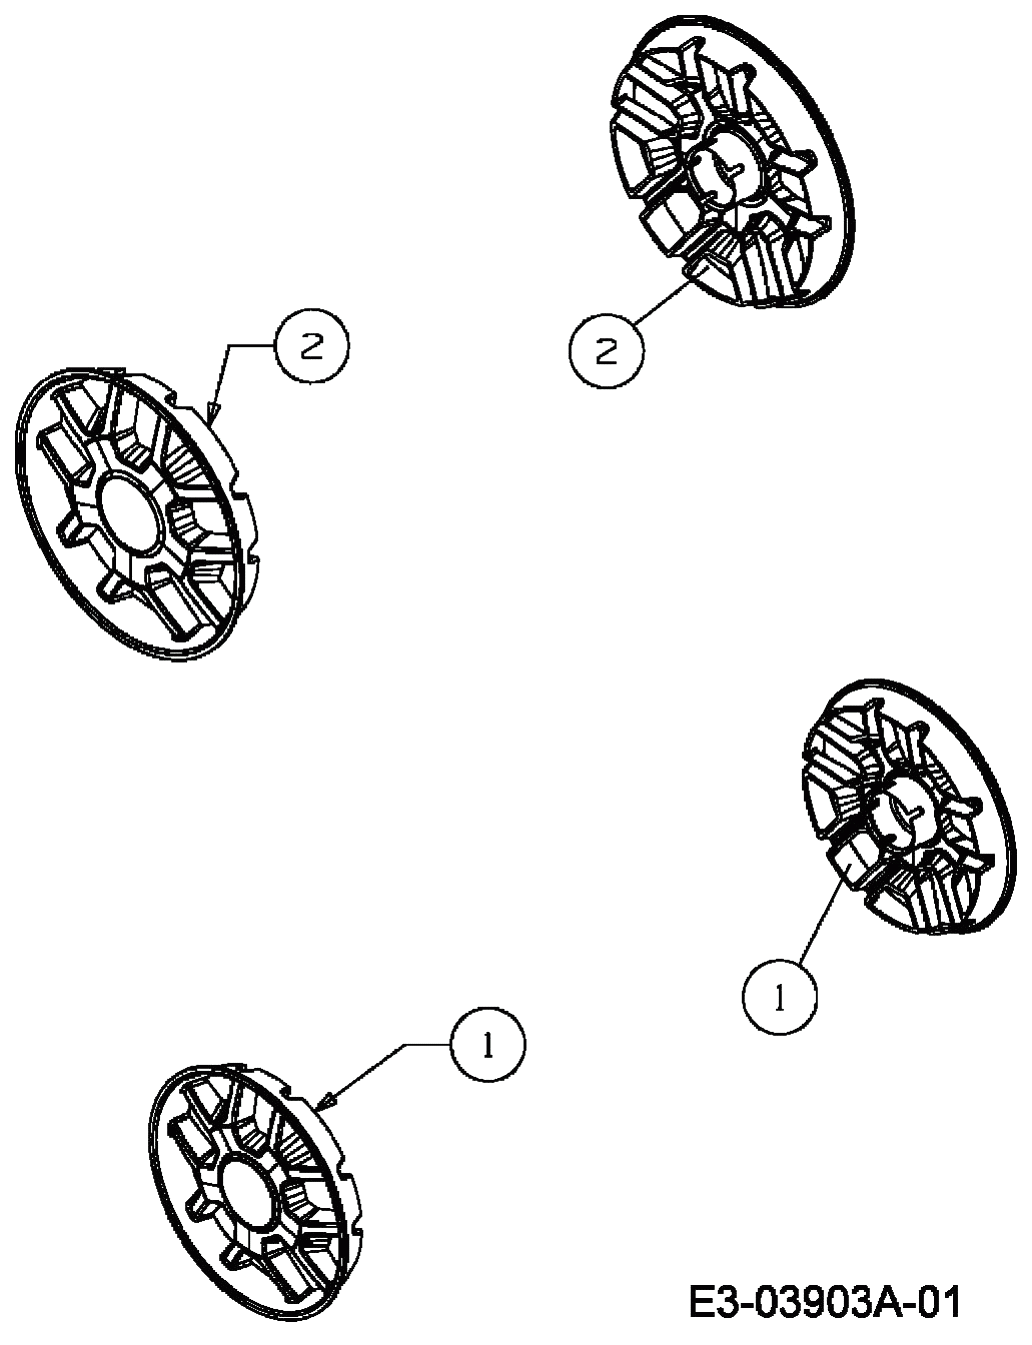 MTD Артикул 11B-164M615 (год выпуска 2009). Колесные колпаки